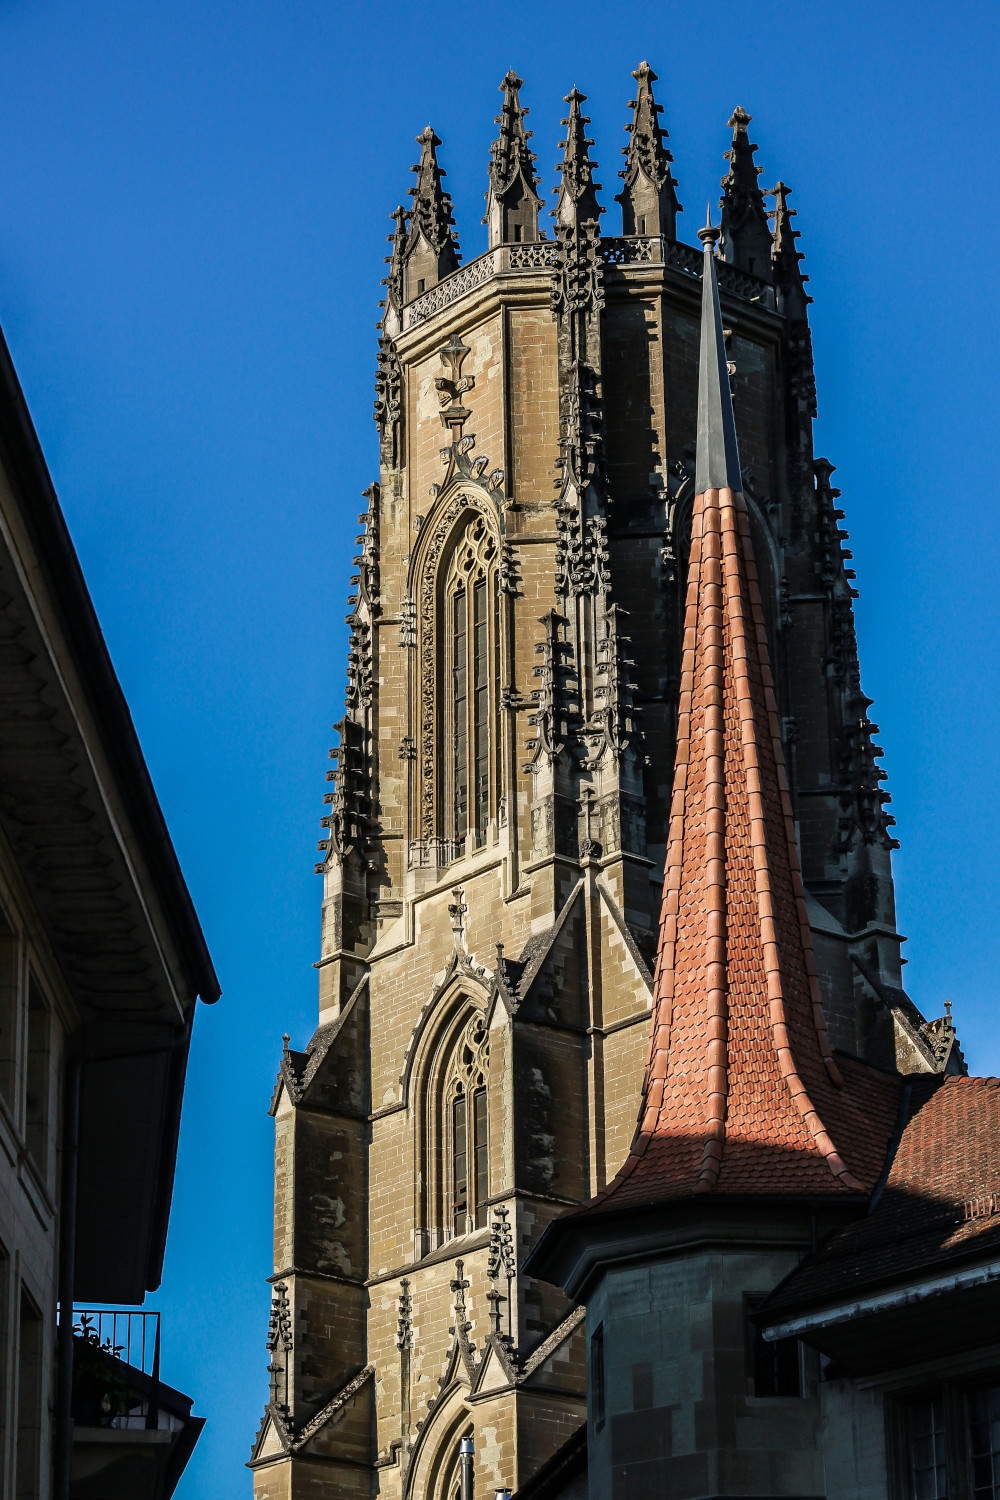 Türme ohne Helm zeigen: Die Gottesbeziehung soll die menschengemachte Architektur überragen. Kathedrale von Fribourg. | Quelle: unsplash.com